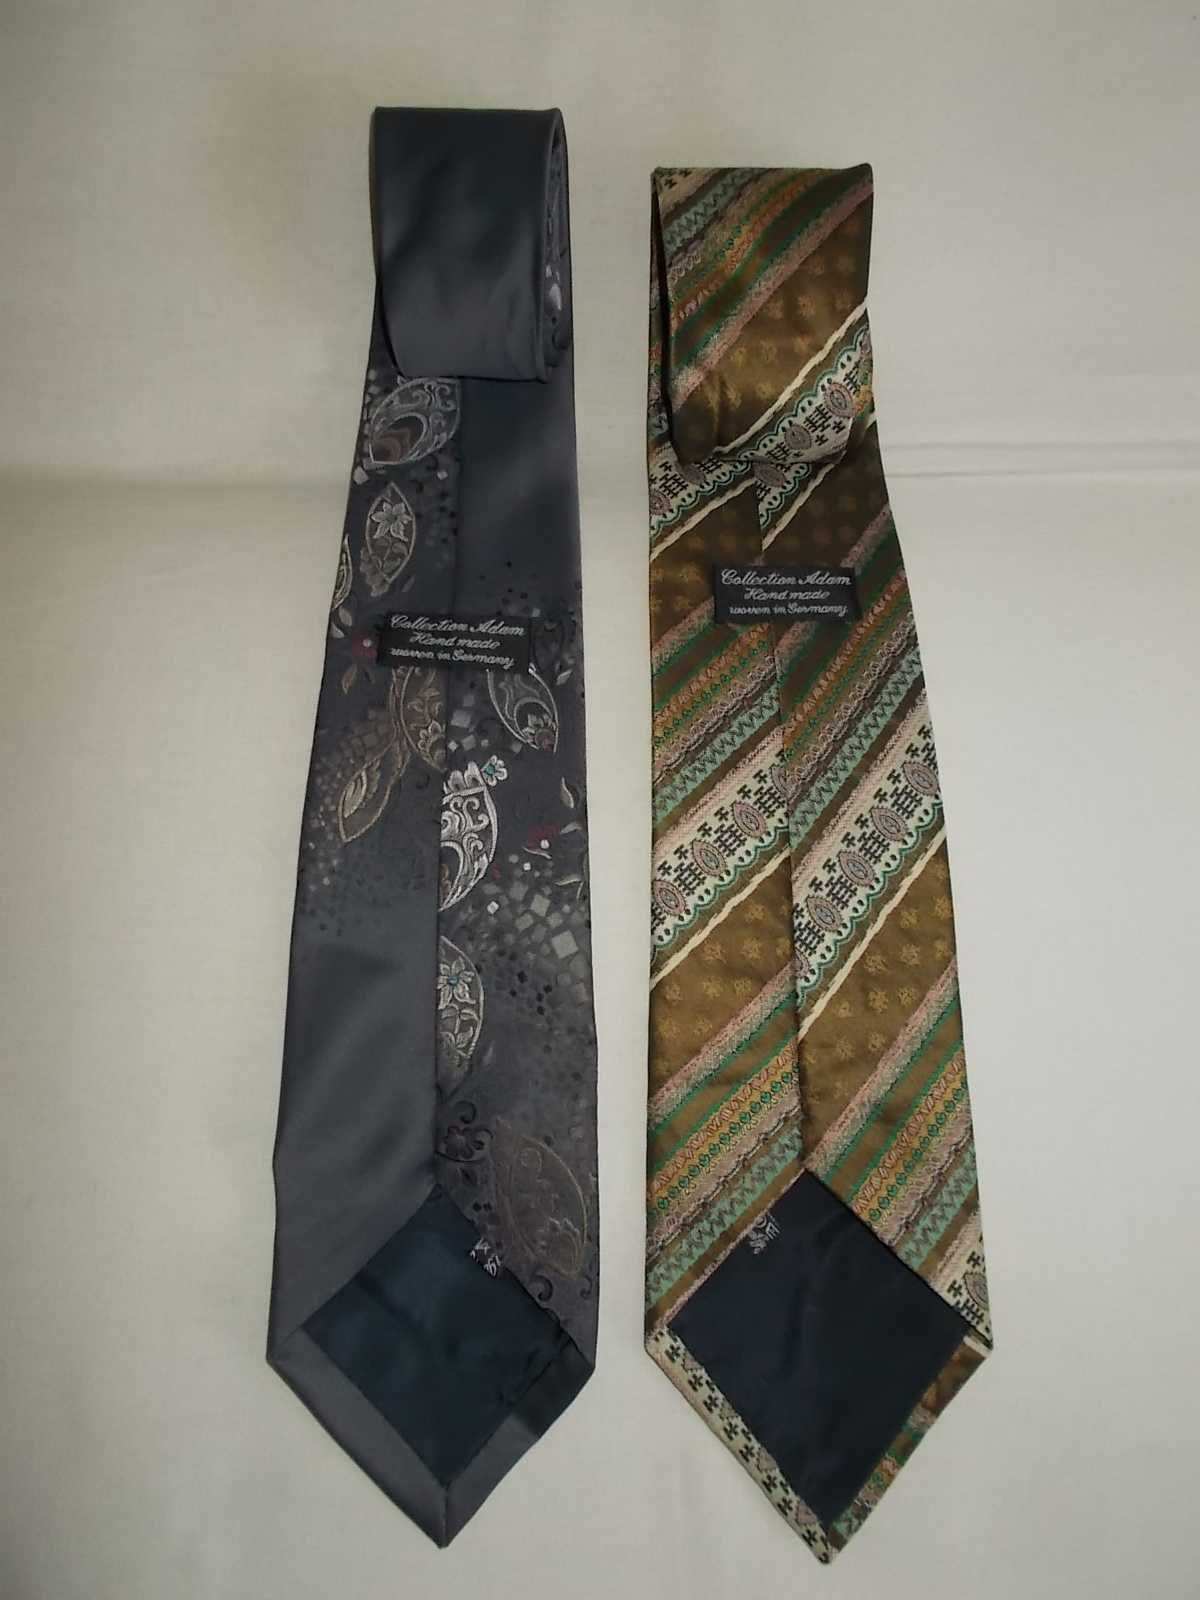 Krawaty Collection Adam Hand made,niemieckie 25zł/szt